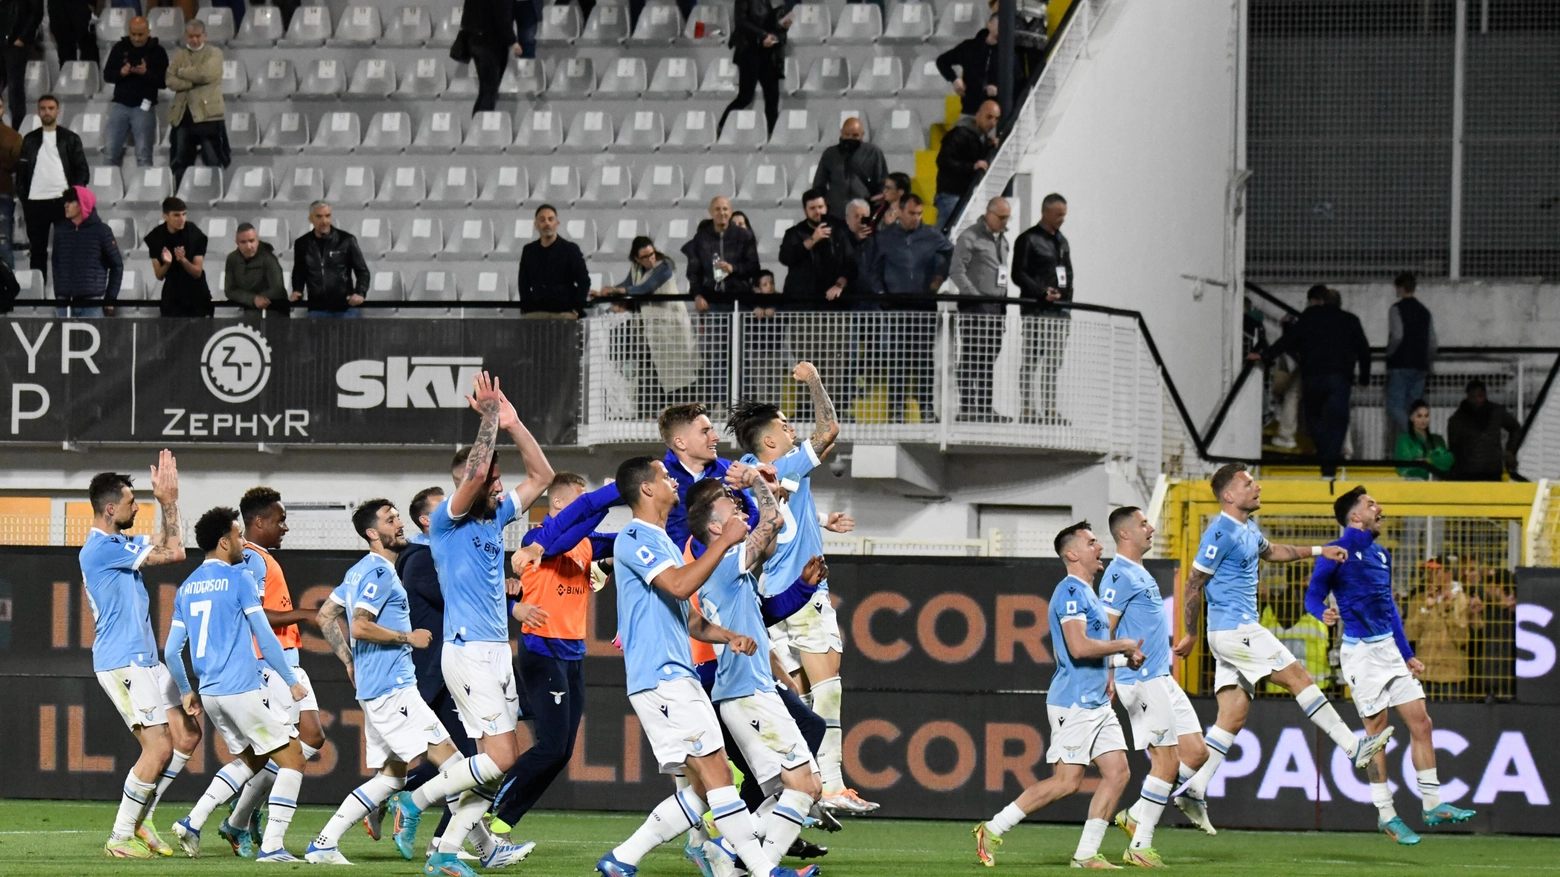 La Lazio torna in campo dopo la vittoria allo scadere contro lo Spezia